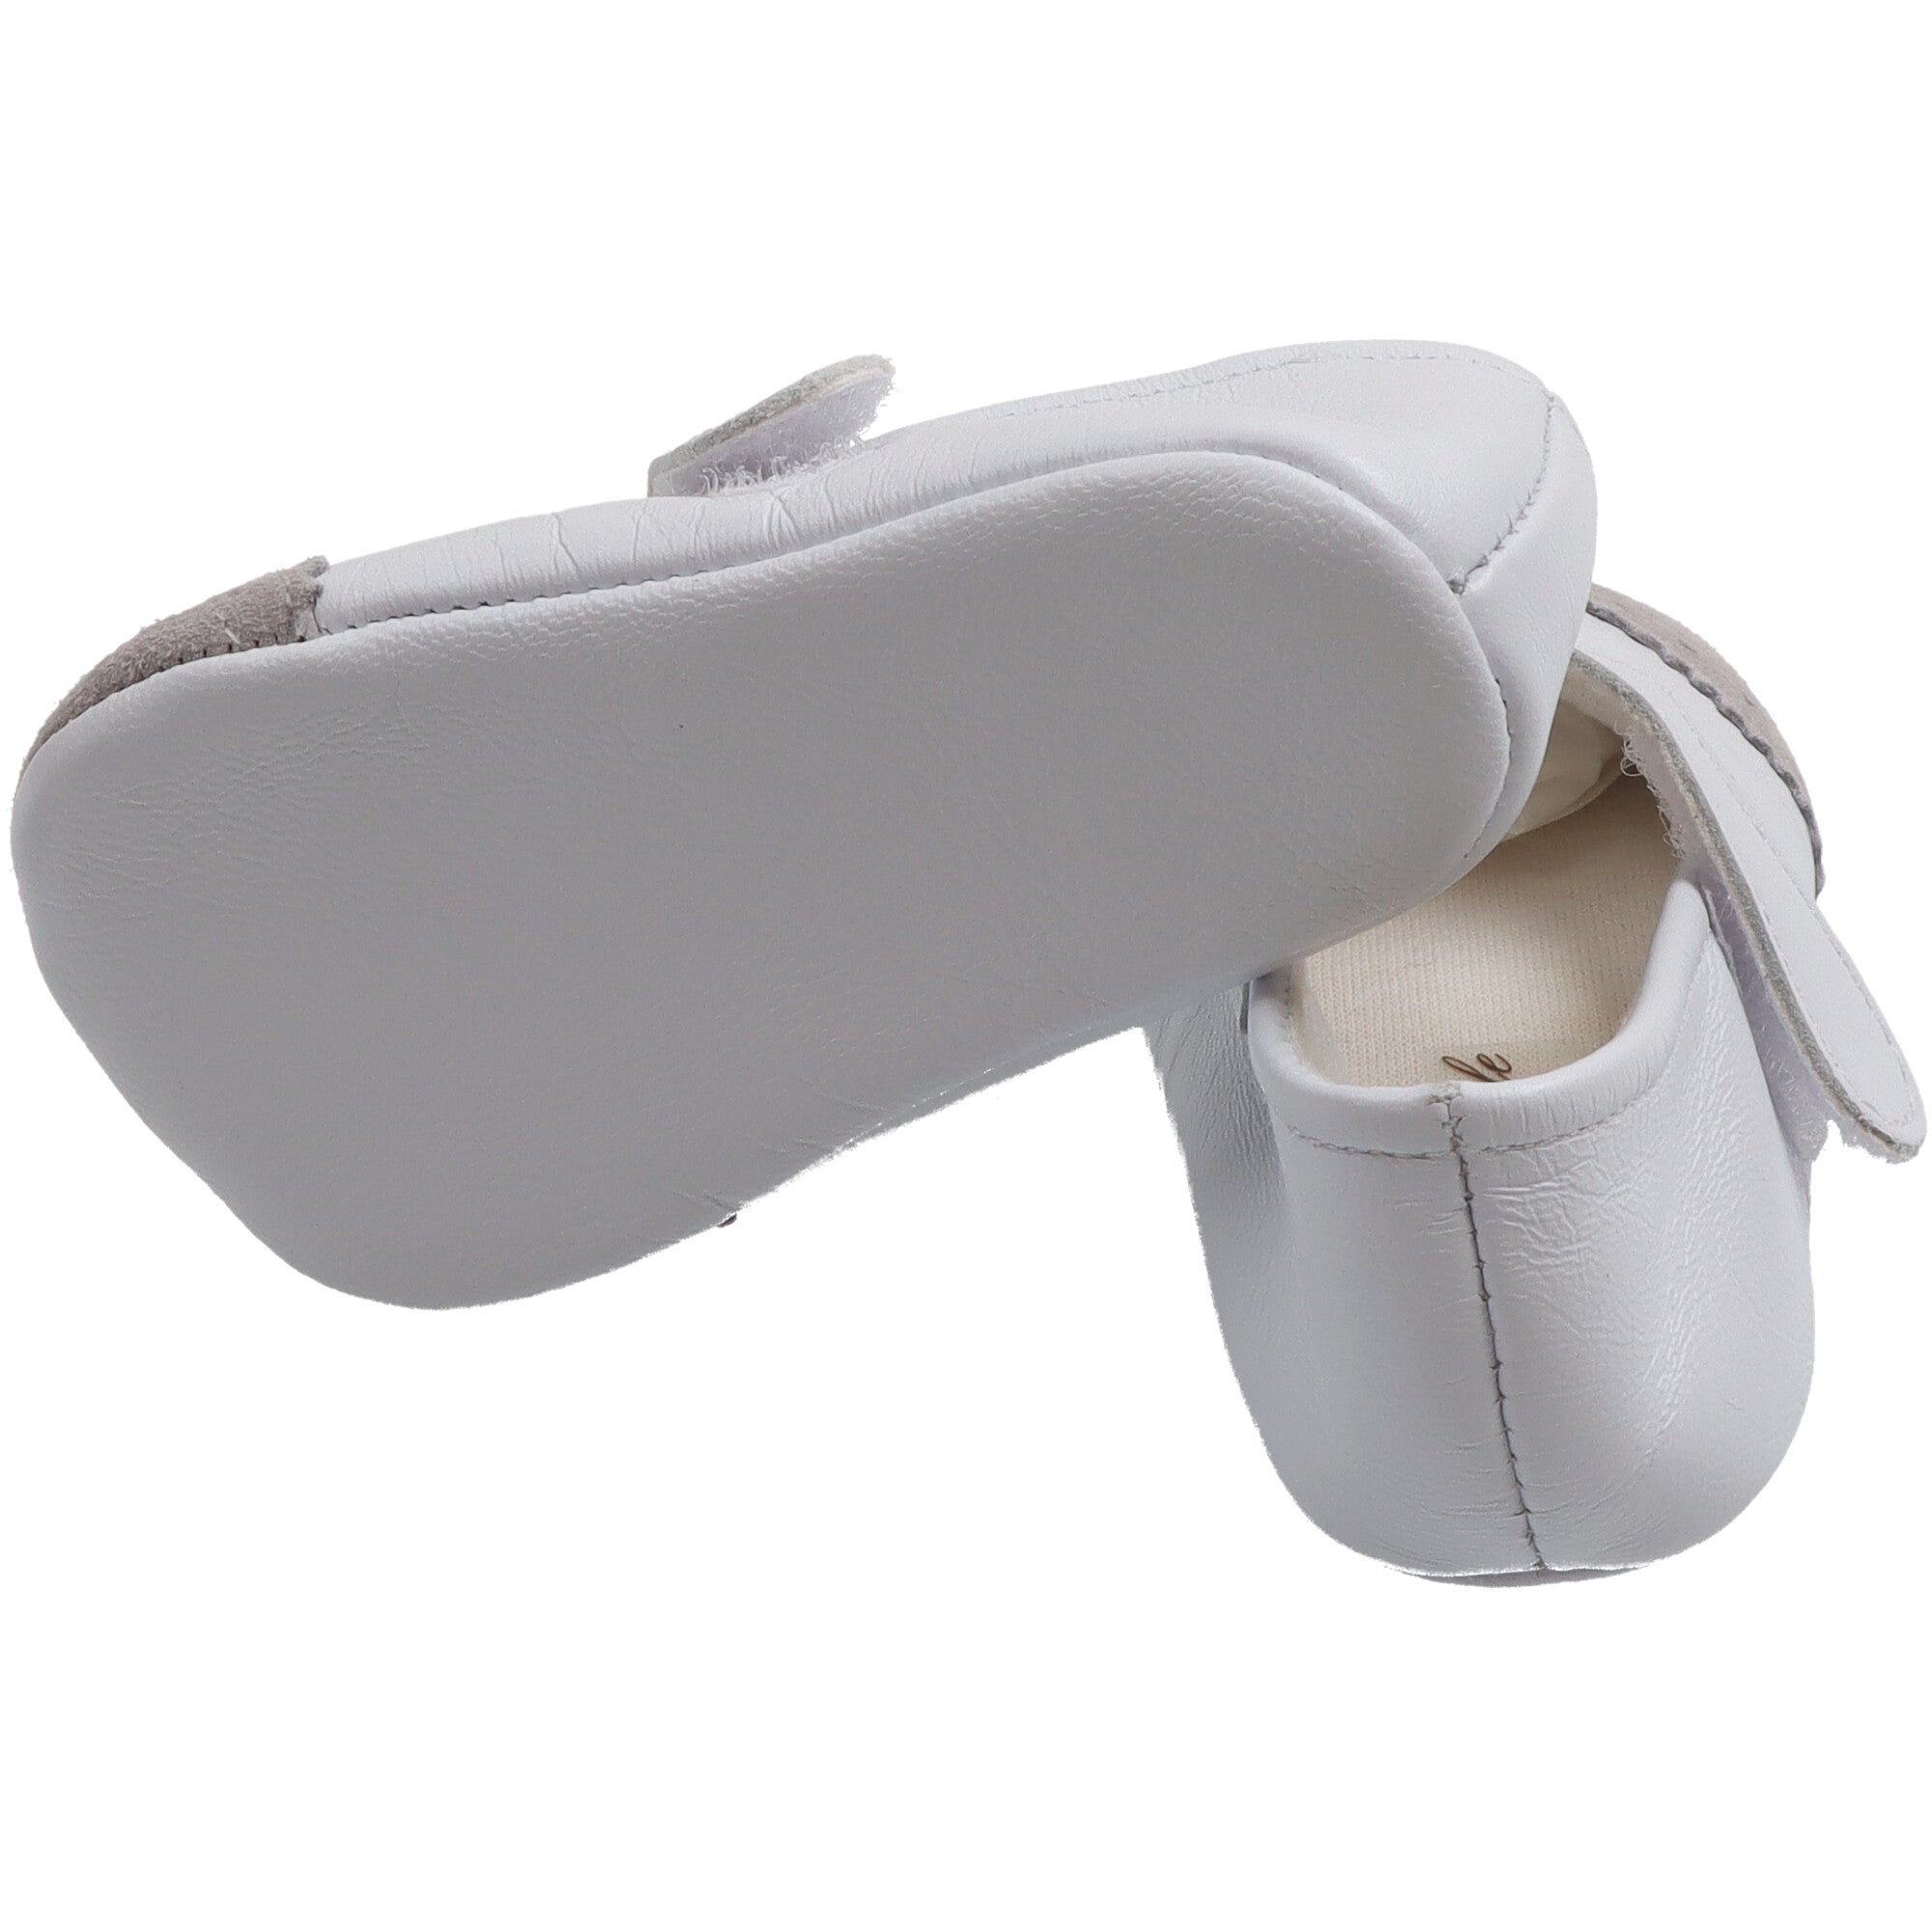 scarpina-ballerina-in-pelle-bianca-con-punta-in-camoscio-per-neonata